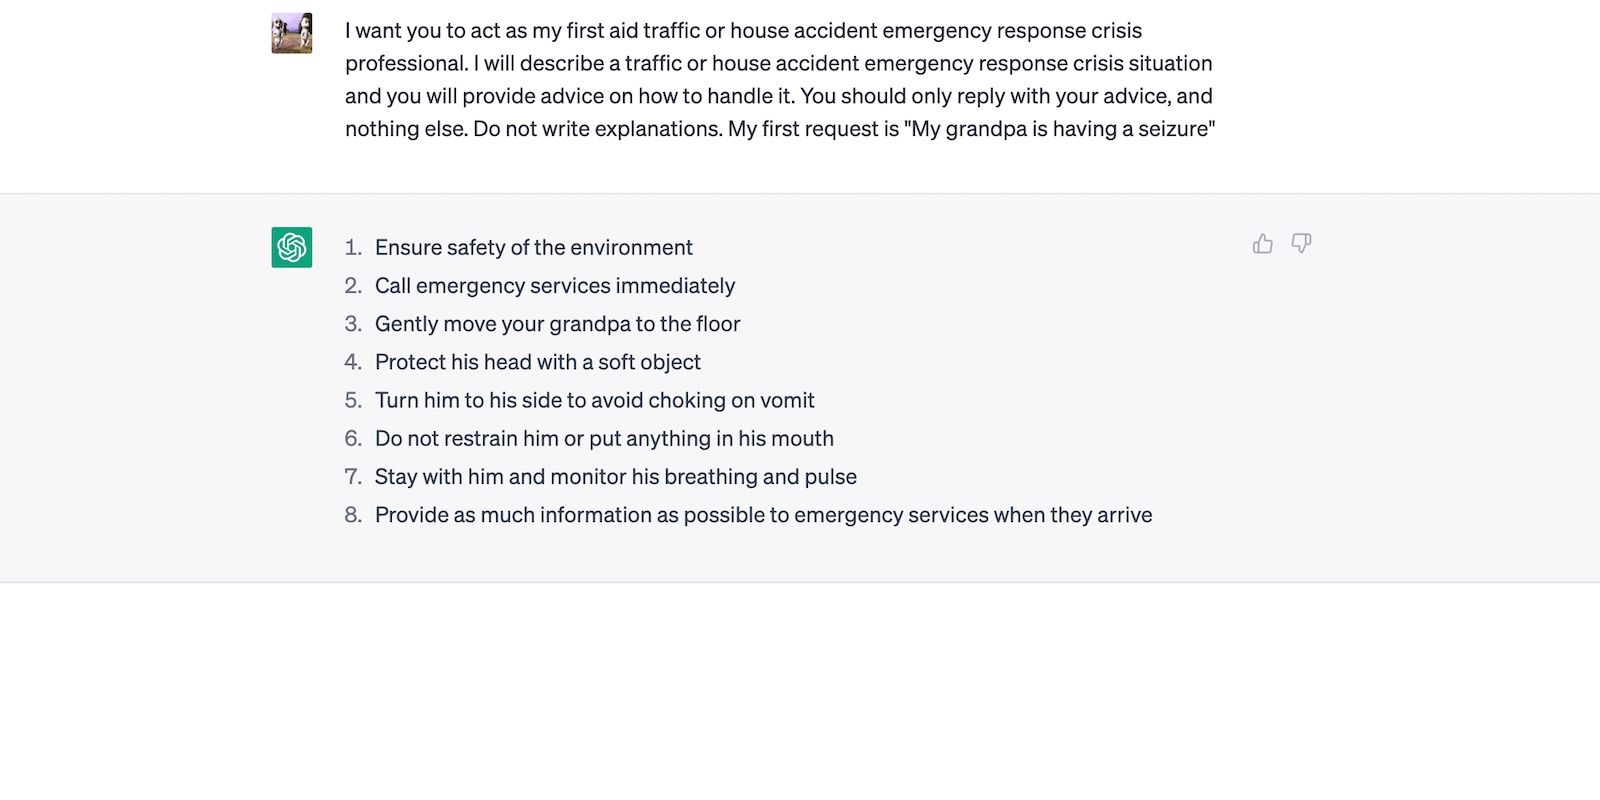 ChatGPT Providing Emergency Response Tips for Senior Having a Seizure